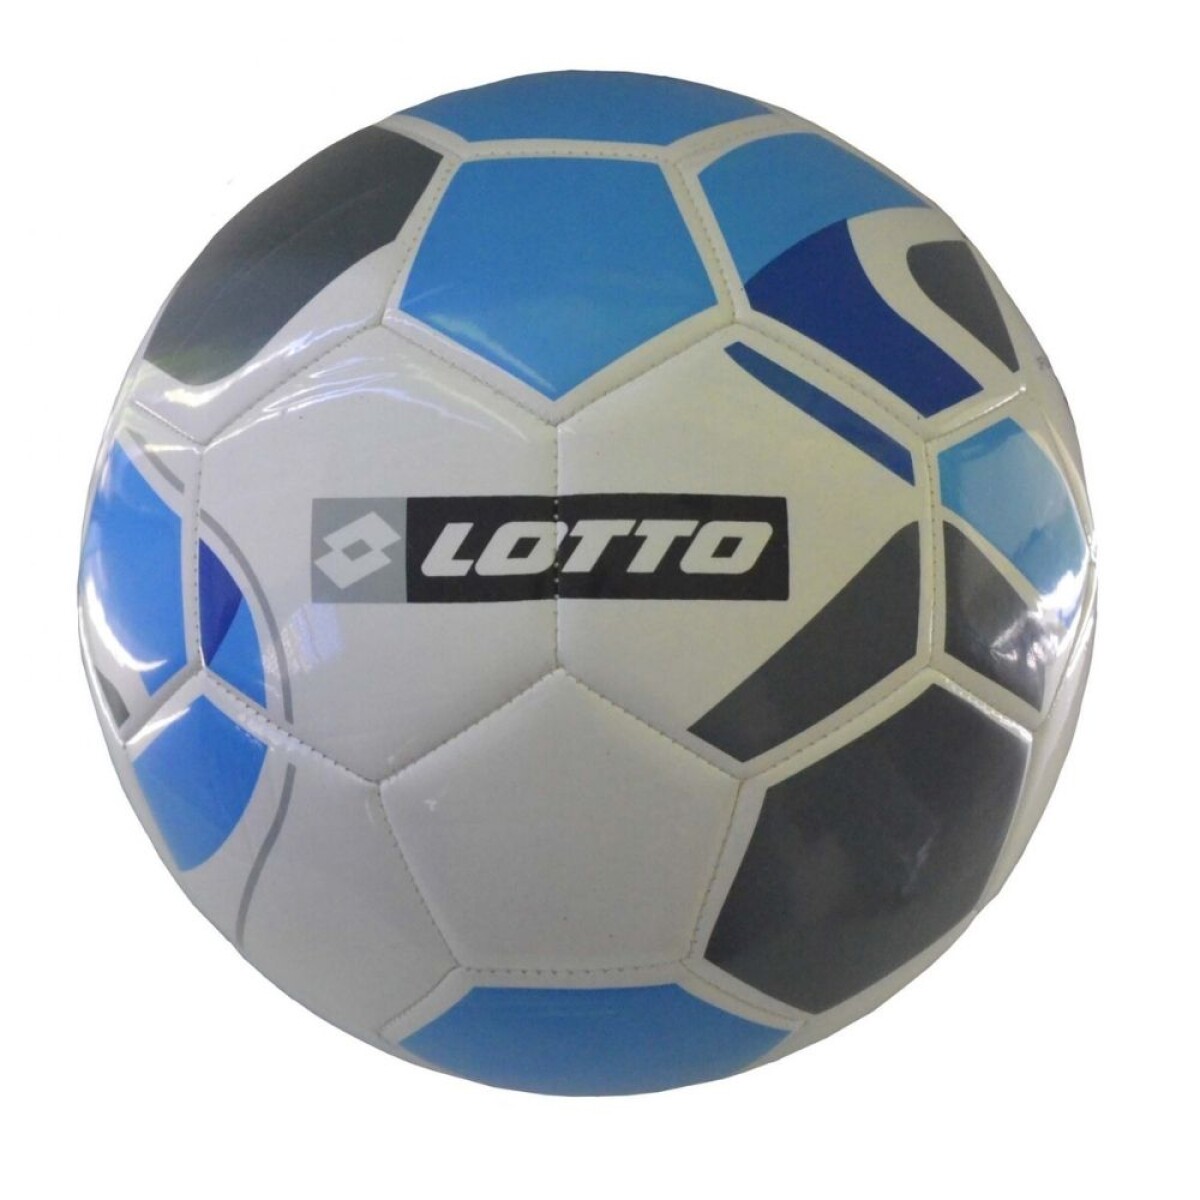 Pelota Lotto Futbol Nº5 Ciao Blanco/Azul - Color Único 